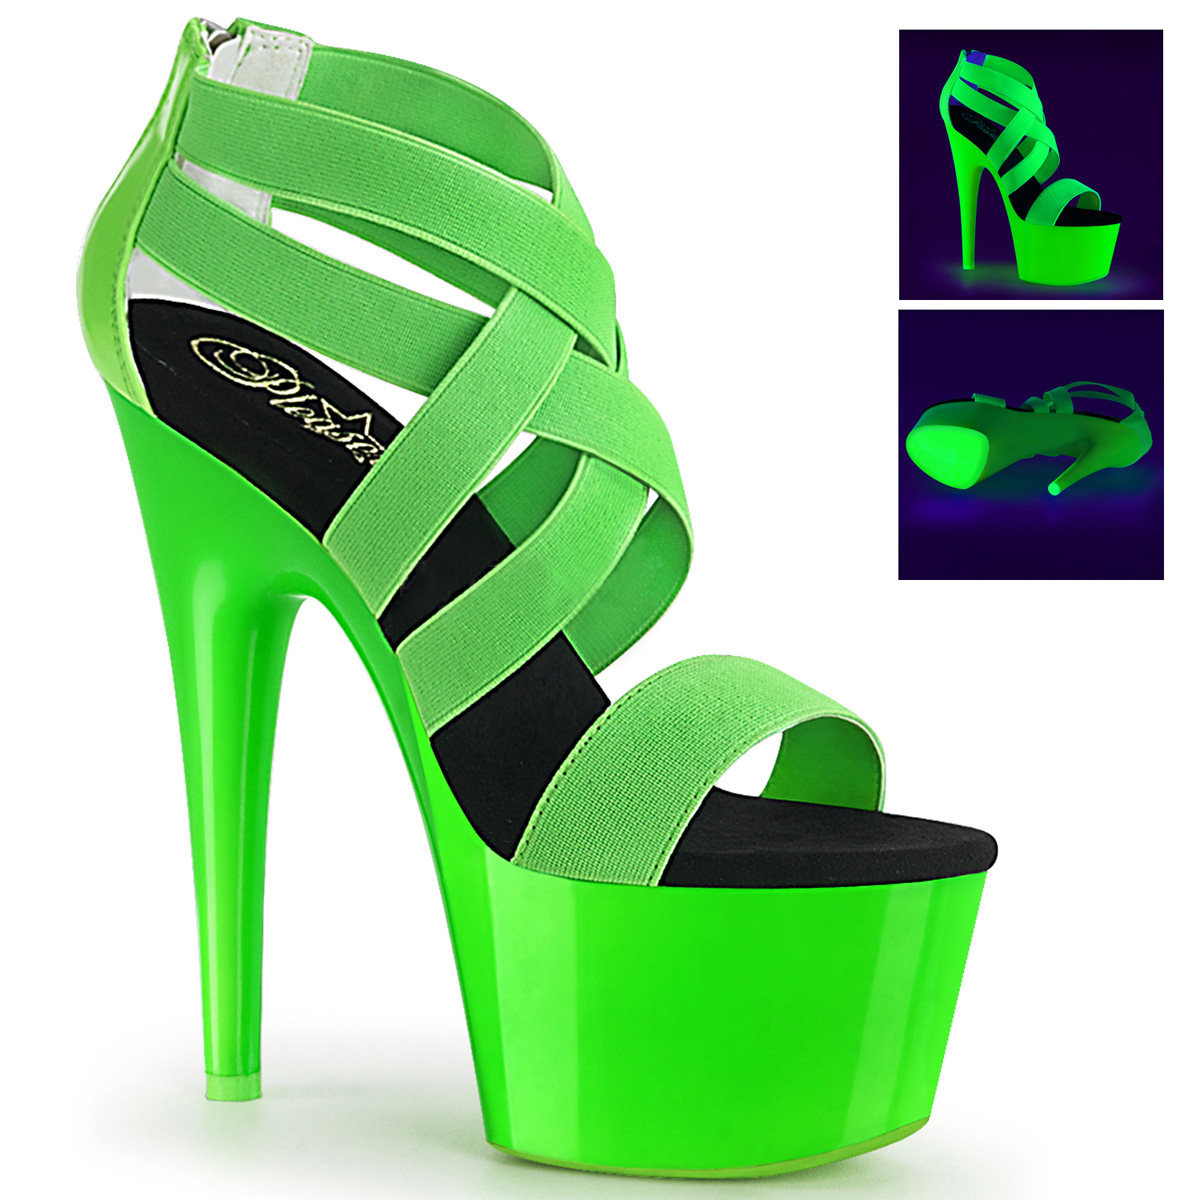 green neon heels